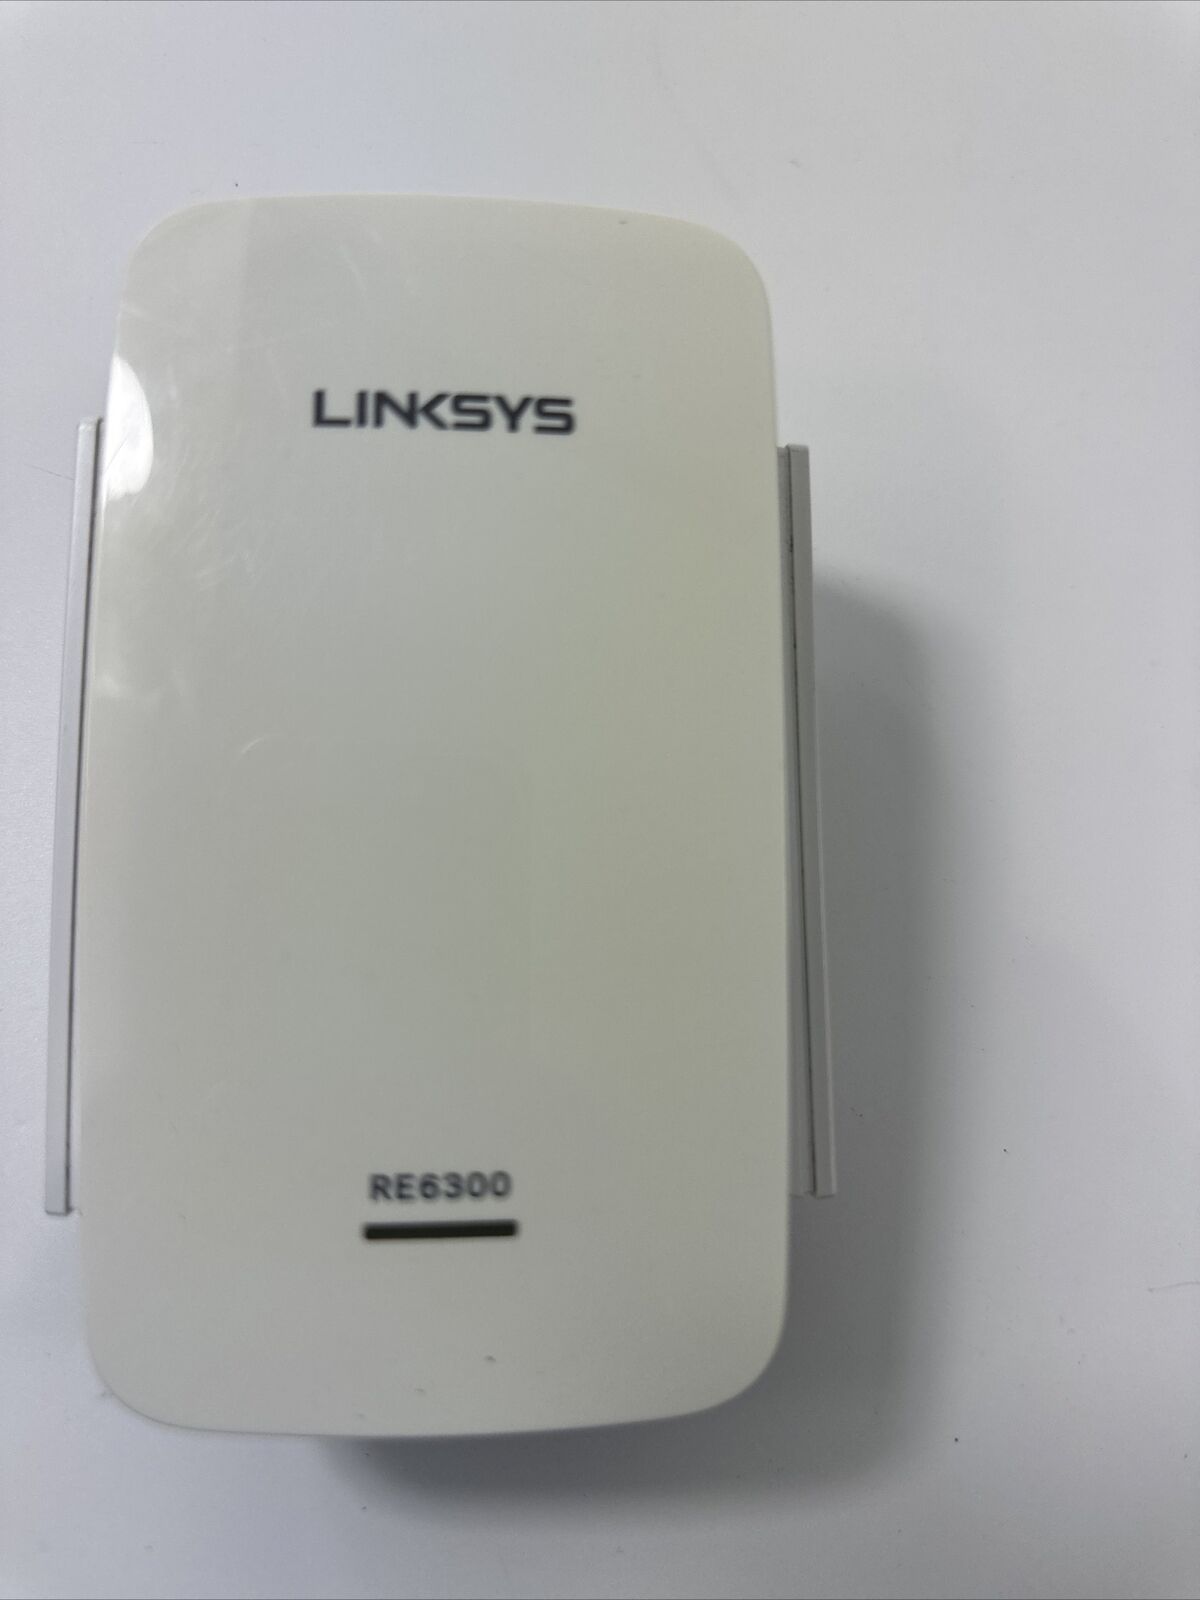 Linksys RE6300 AC750 Wi-Fi Gigabit Range Extender